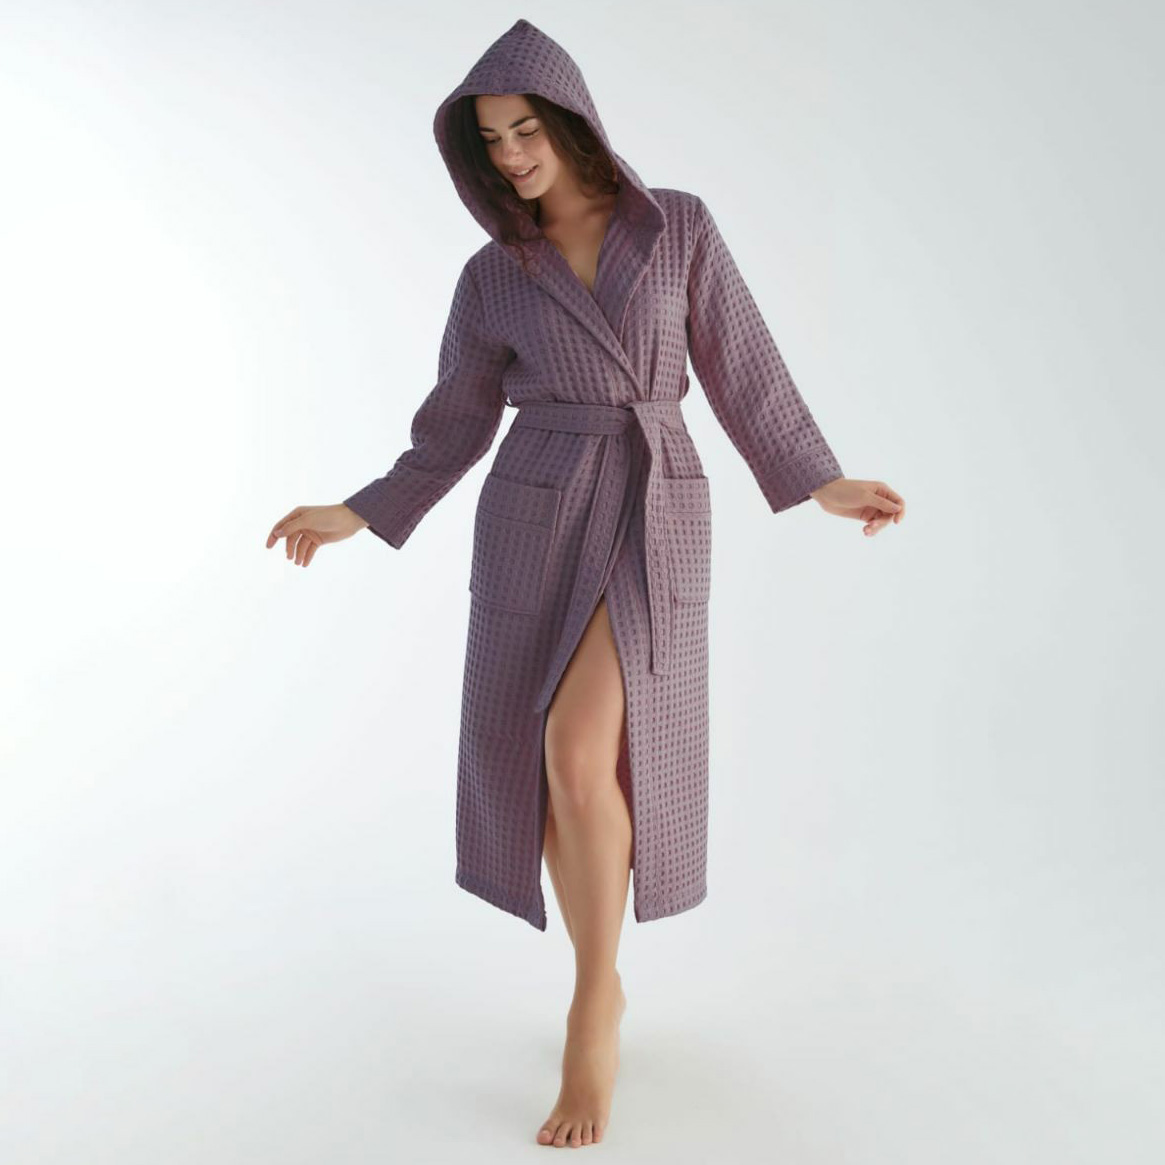 Банный халат Katarina цвет: фиолетовый (L-XL), размер L-xL nus948817 Банный халат Katarina цвет: фиолетовый (L-XL) - фото 1